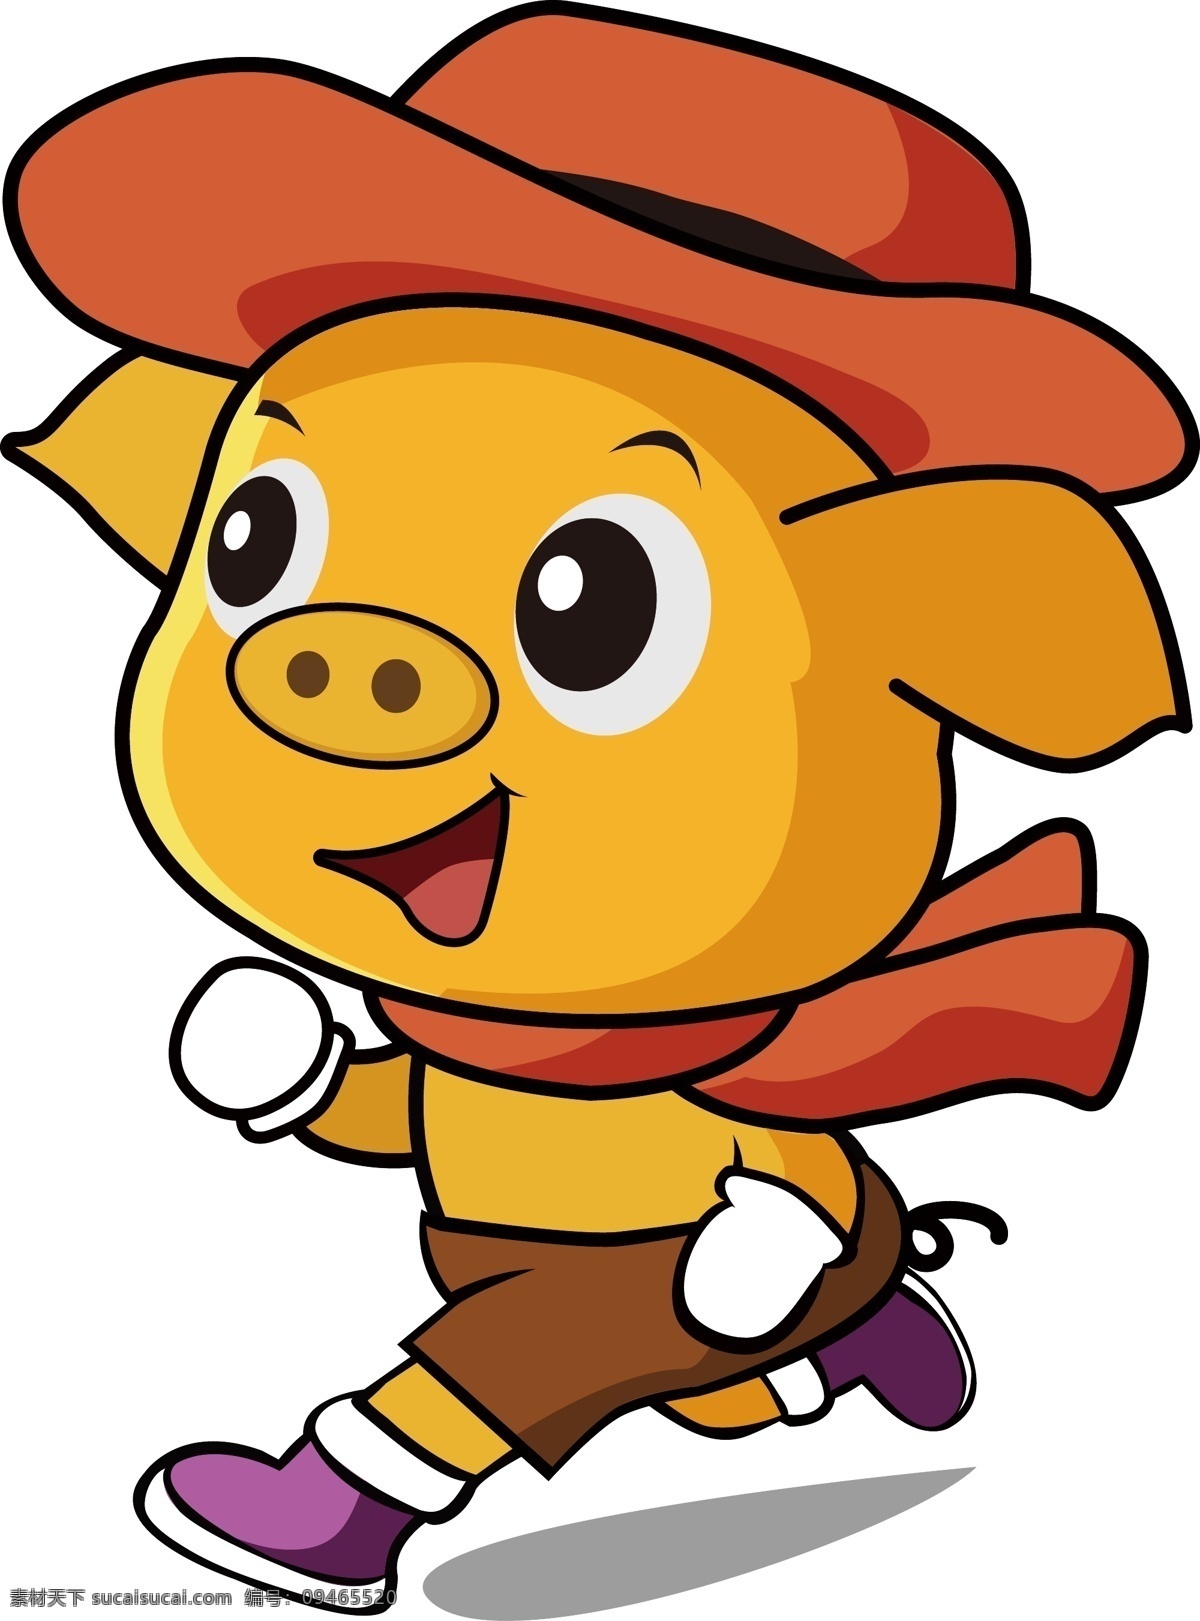 矢量猪 矢量 猪 小猪 奔跑 可爱的猪 卡通猪 橙色 黄色 萌萌的猪 logo 矢量素材 奔跑的猪 动漫动画